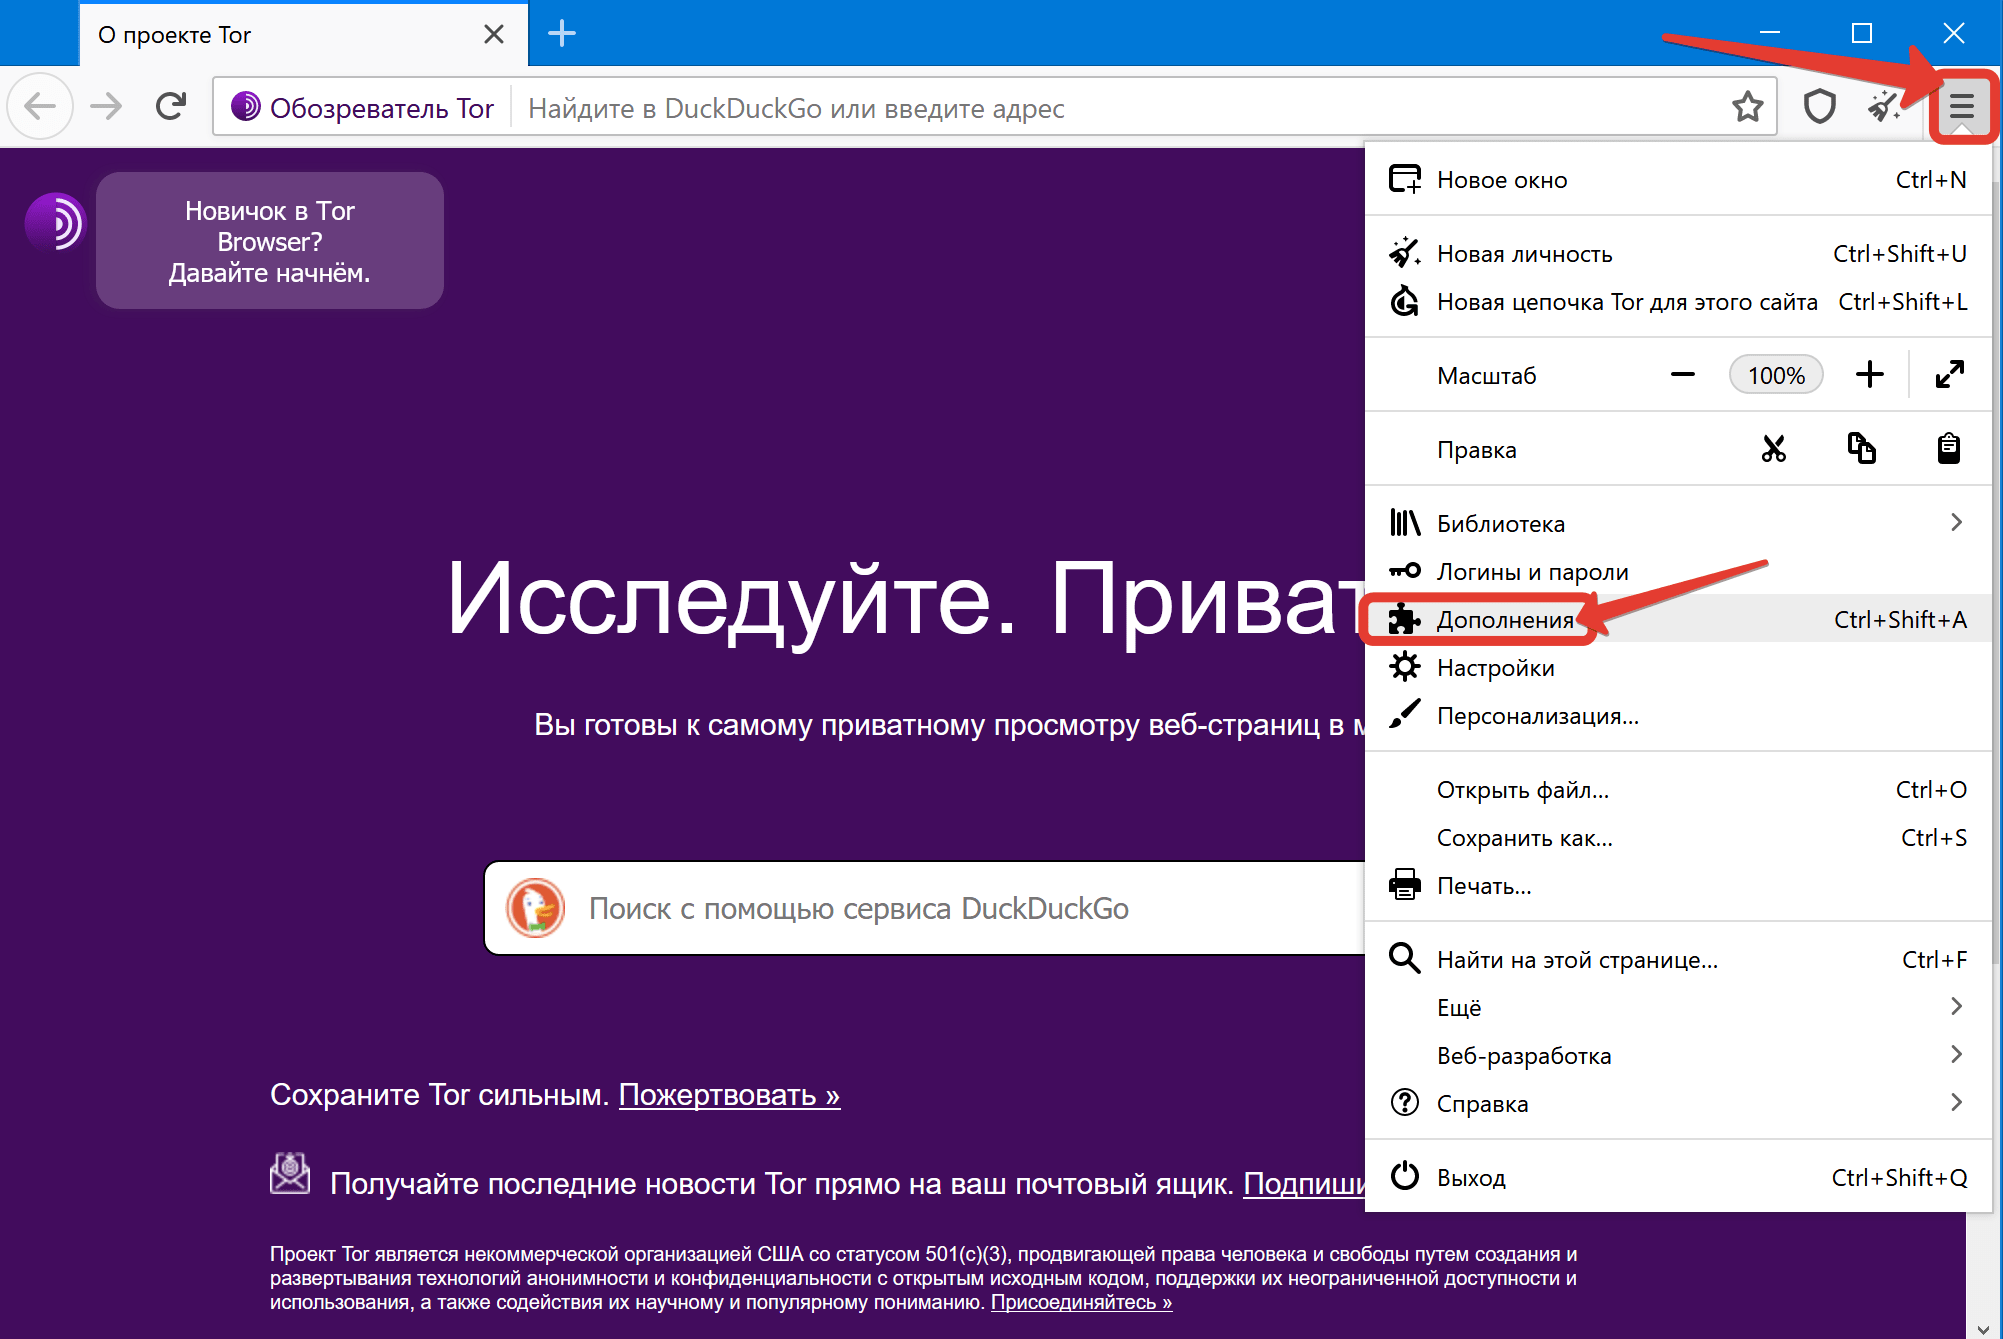 Как скачать видео из тор браузера даркнет blacksprut ios скачать бесплатно на русском